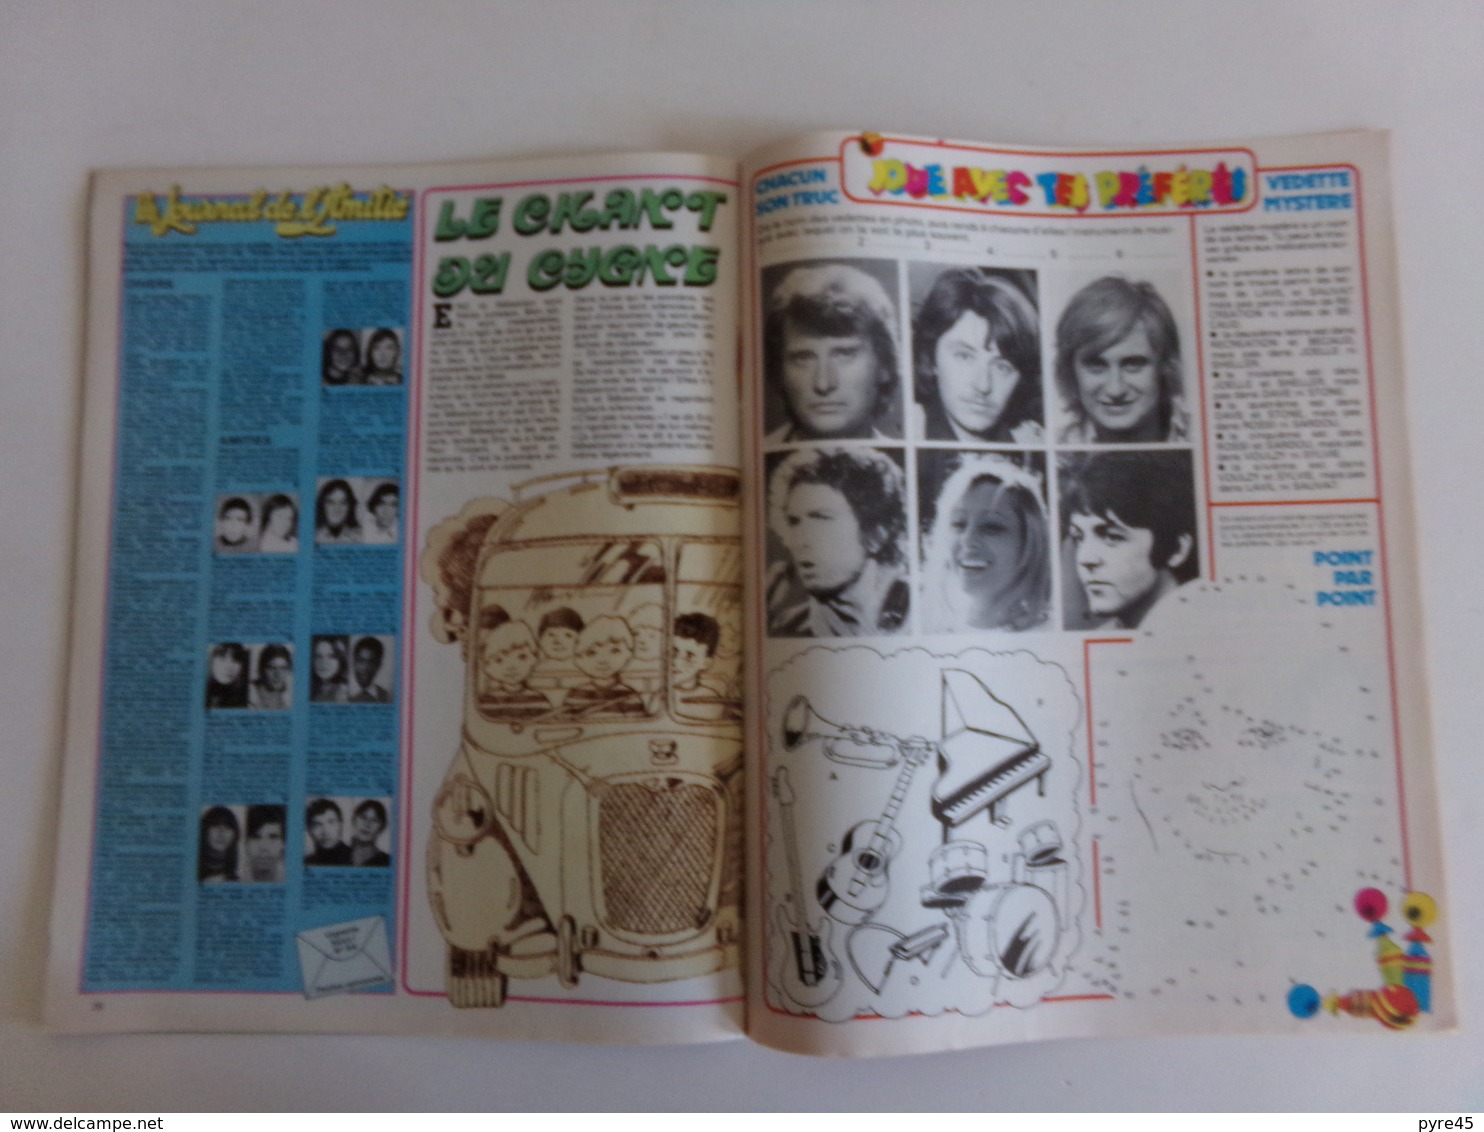 Revue " Salut " n° 64, 1978, Johnny, William Sheller, Michael Zager, Les Stones ...